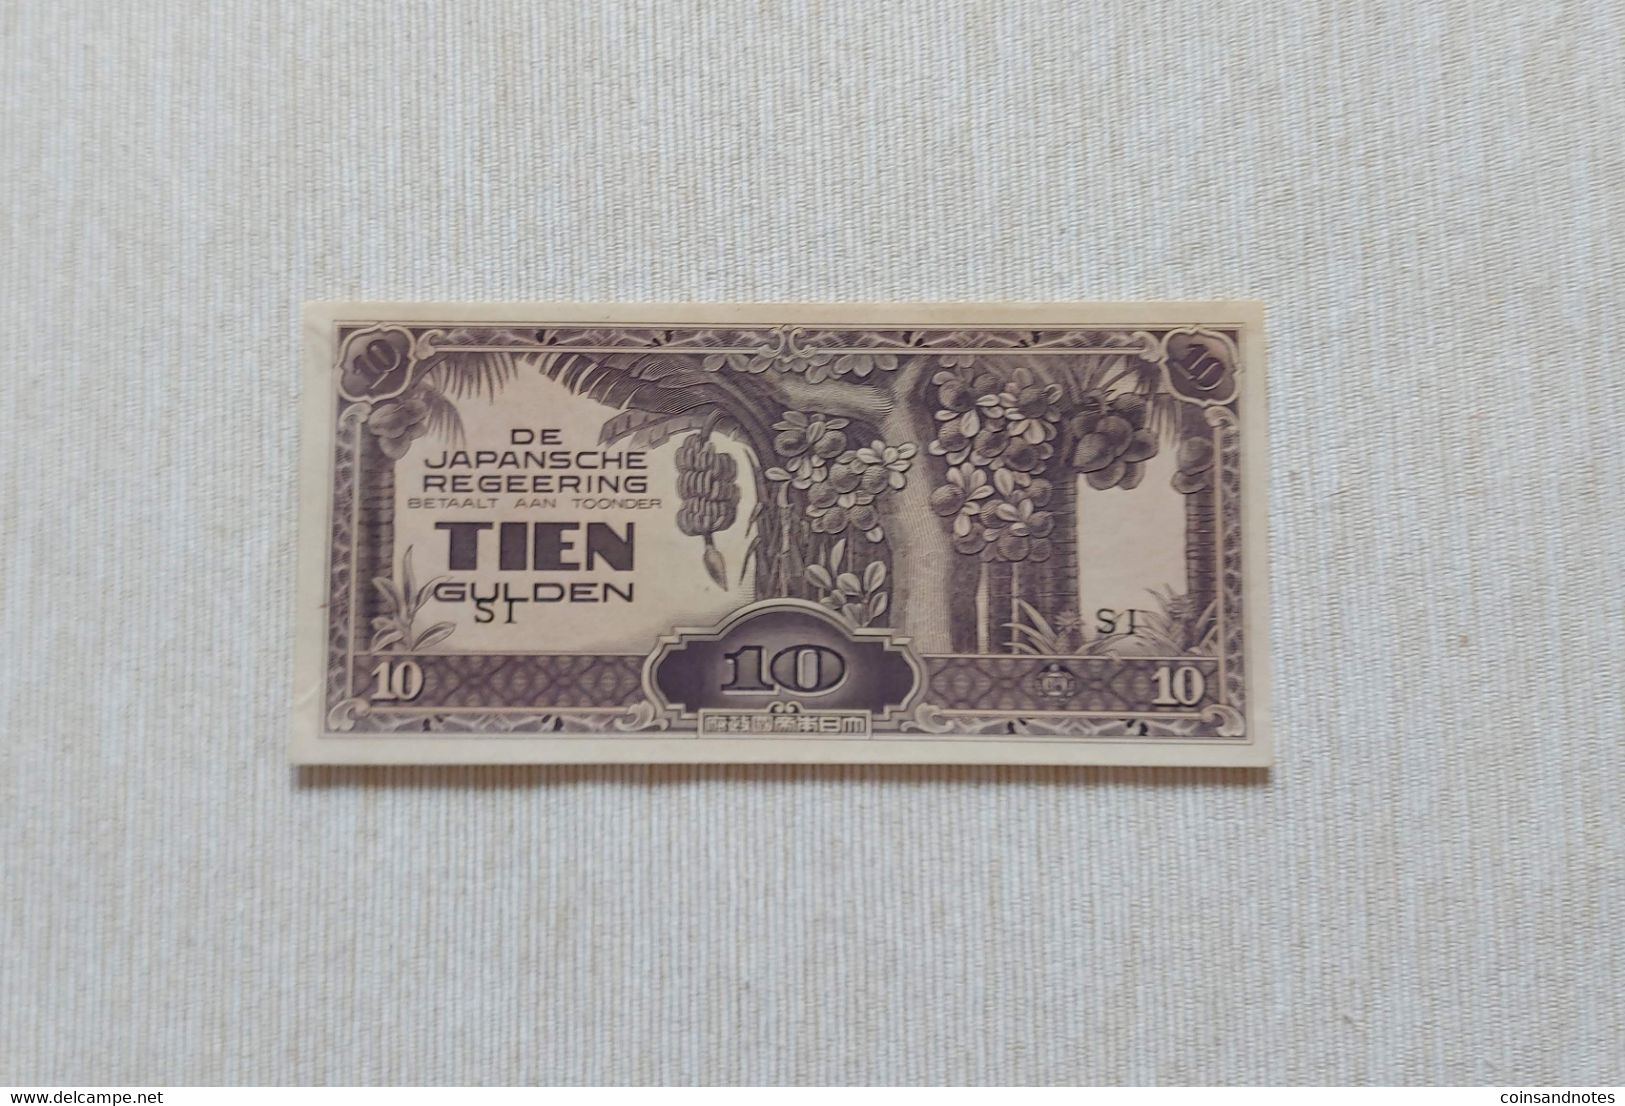 De Japansche Regeering 1942 - Netherlands East Indies (Indonesia) - 10 Gulden - P#125c - UNC - Nederlands-Indië